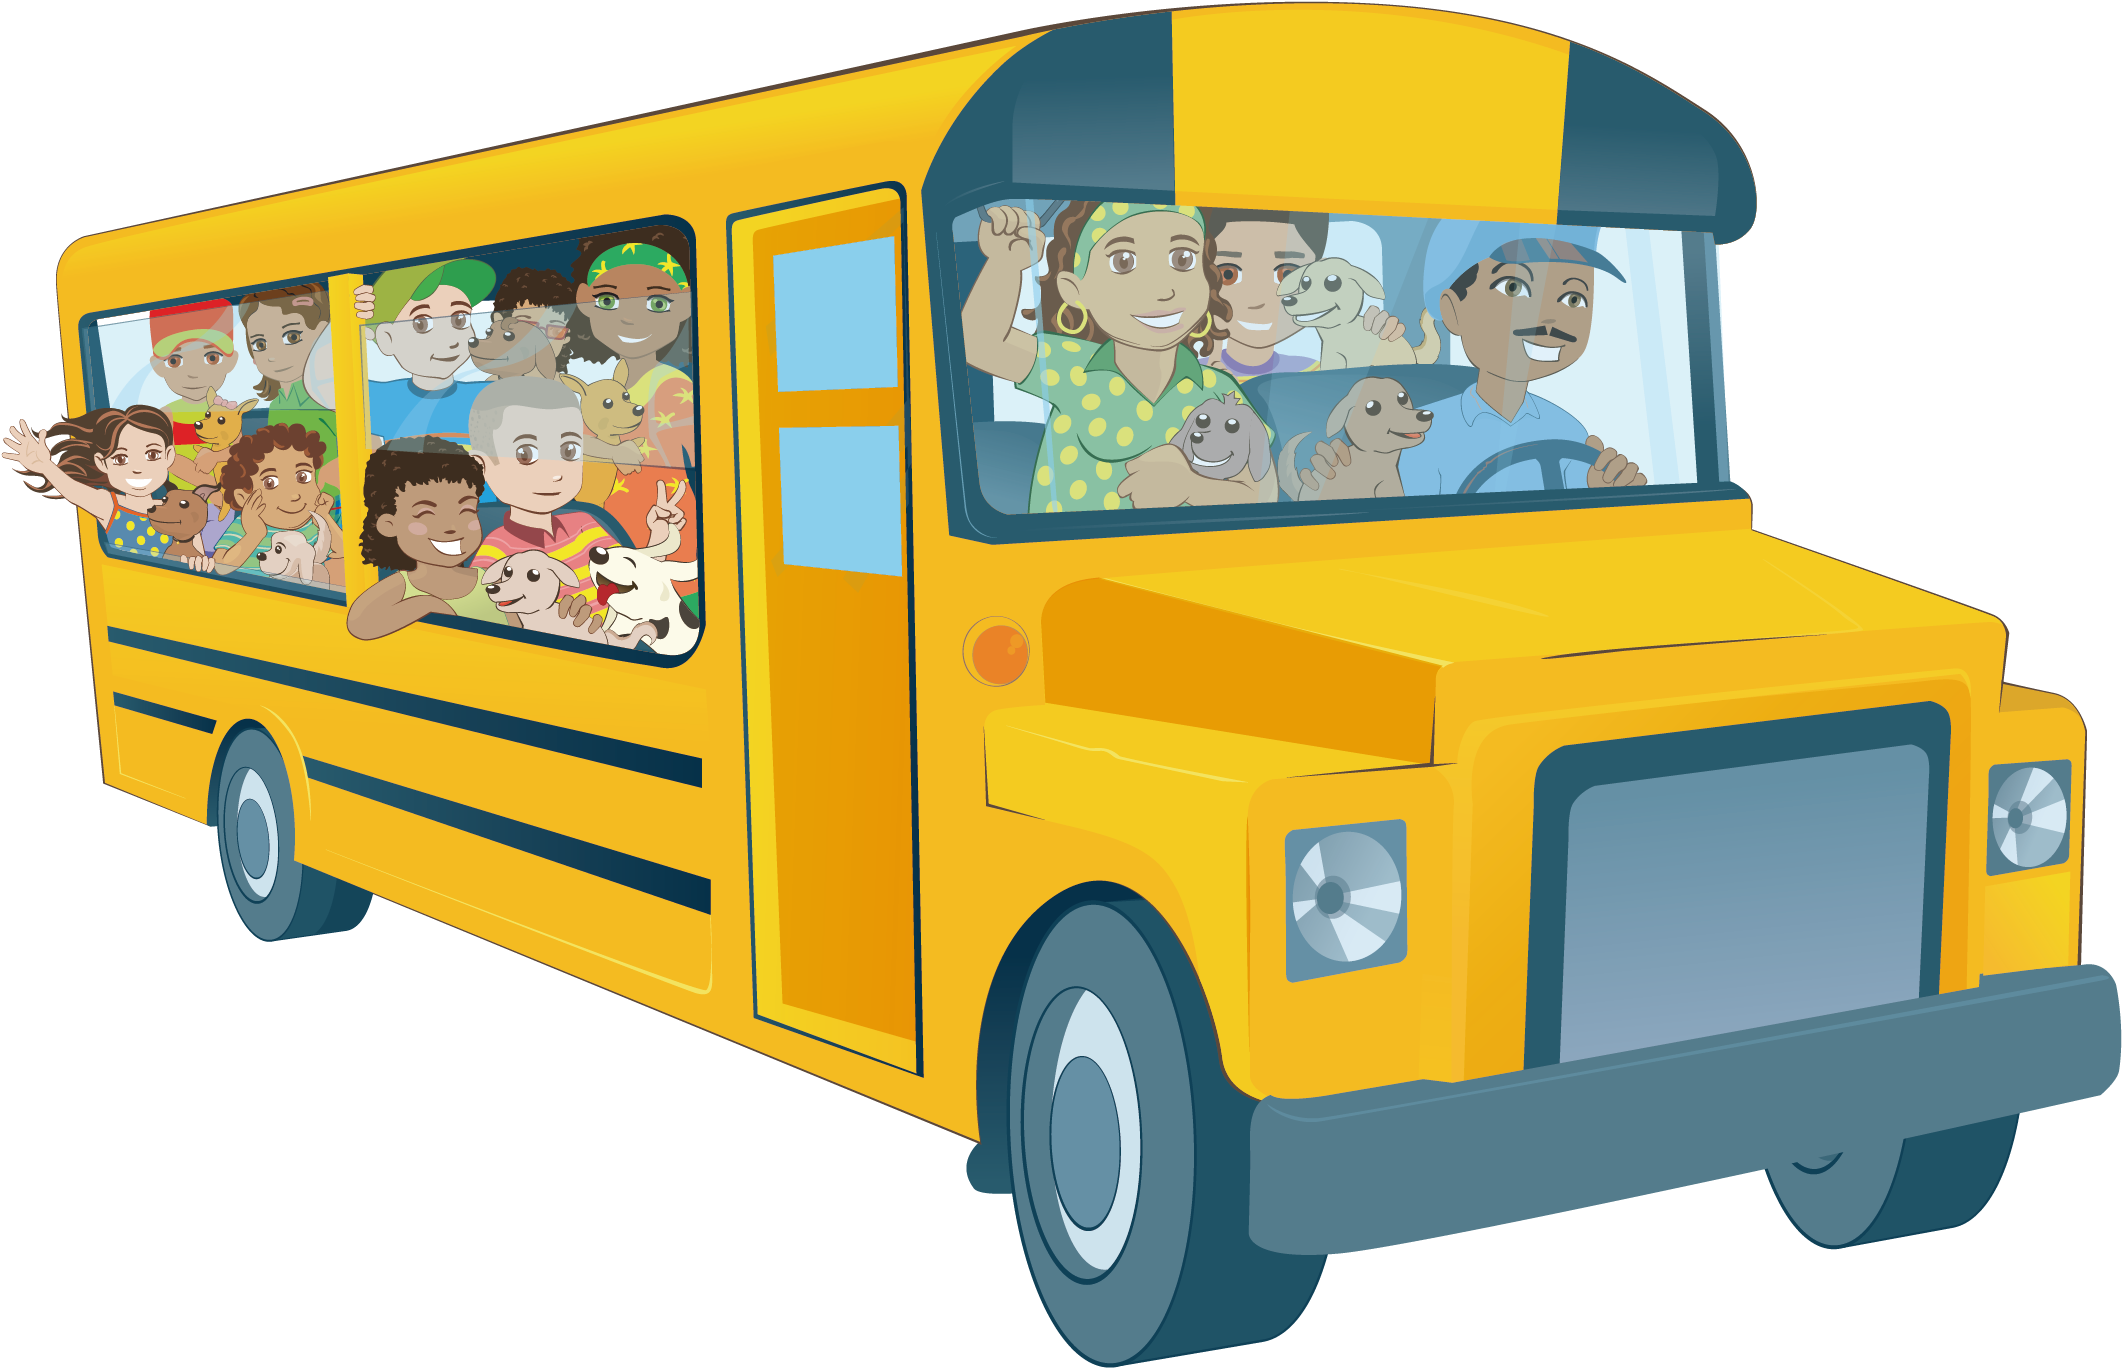 Детский автобус для детей. Автобус для детей. Автобус для детей на прозрачном фоне. Изображение автобуса для детей. Школьный автобус мультяшный.